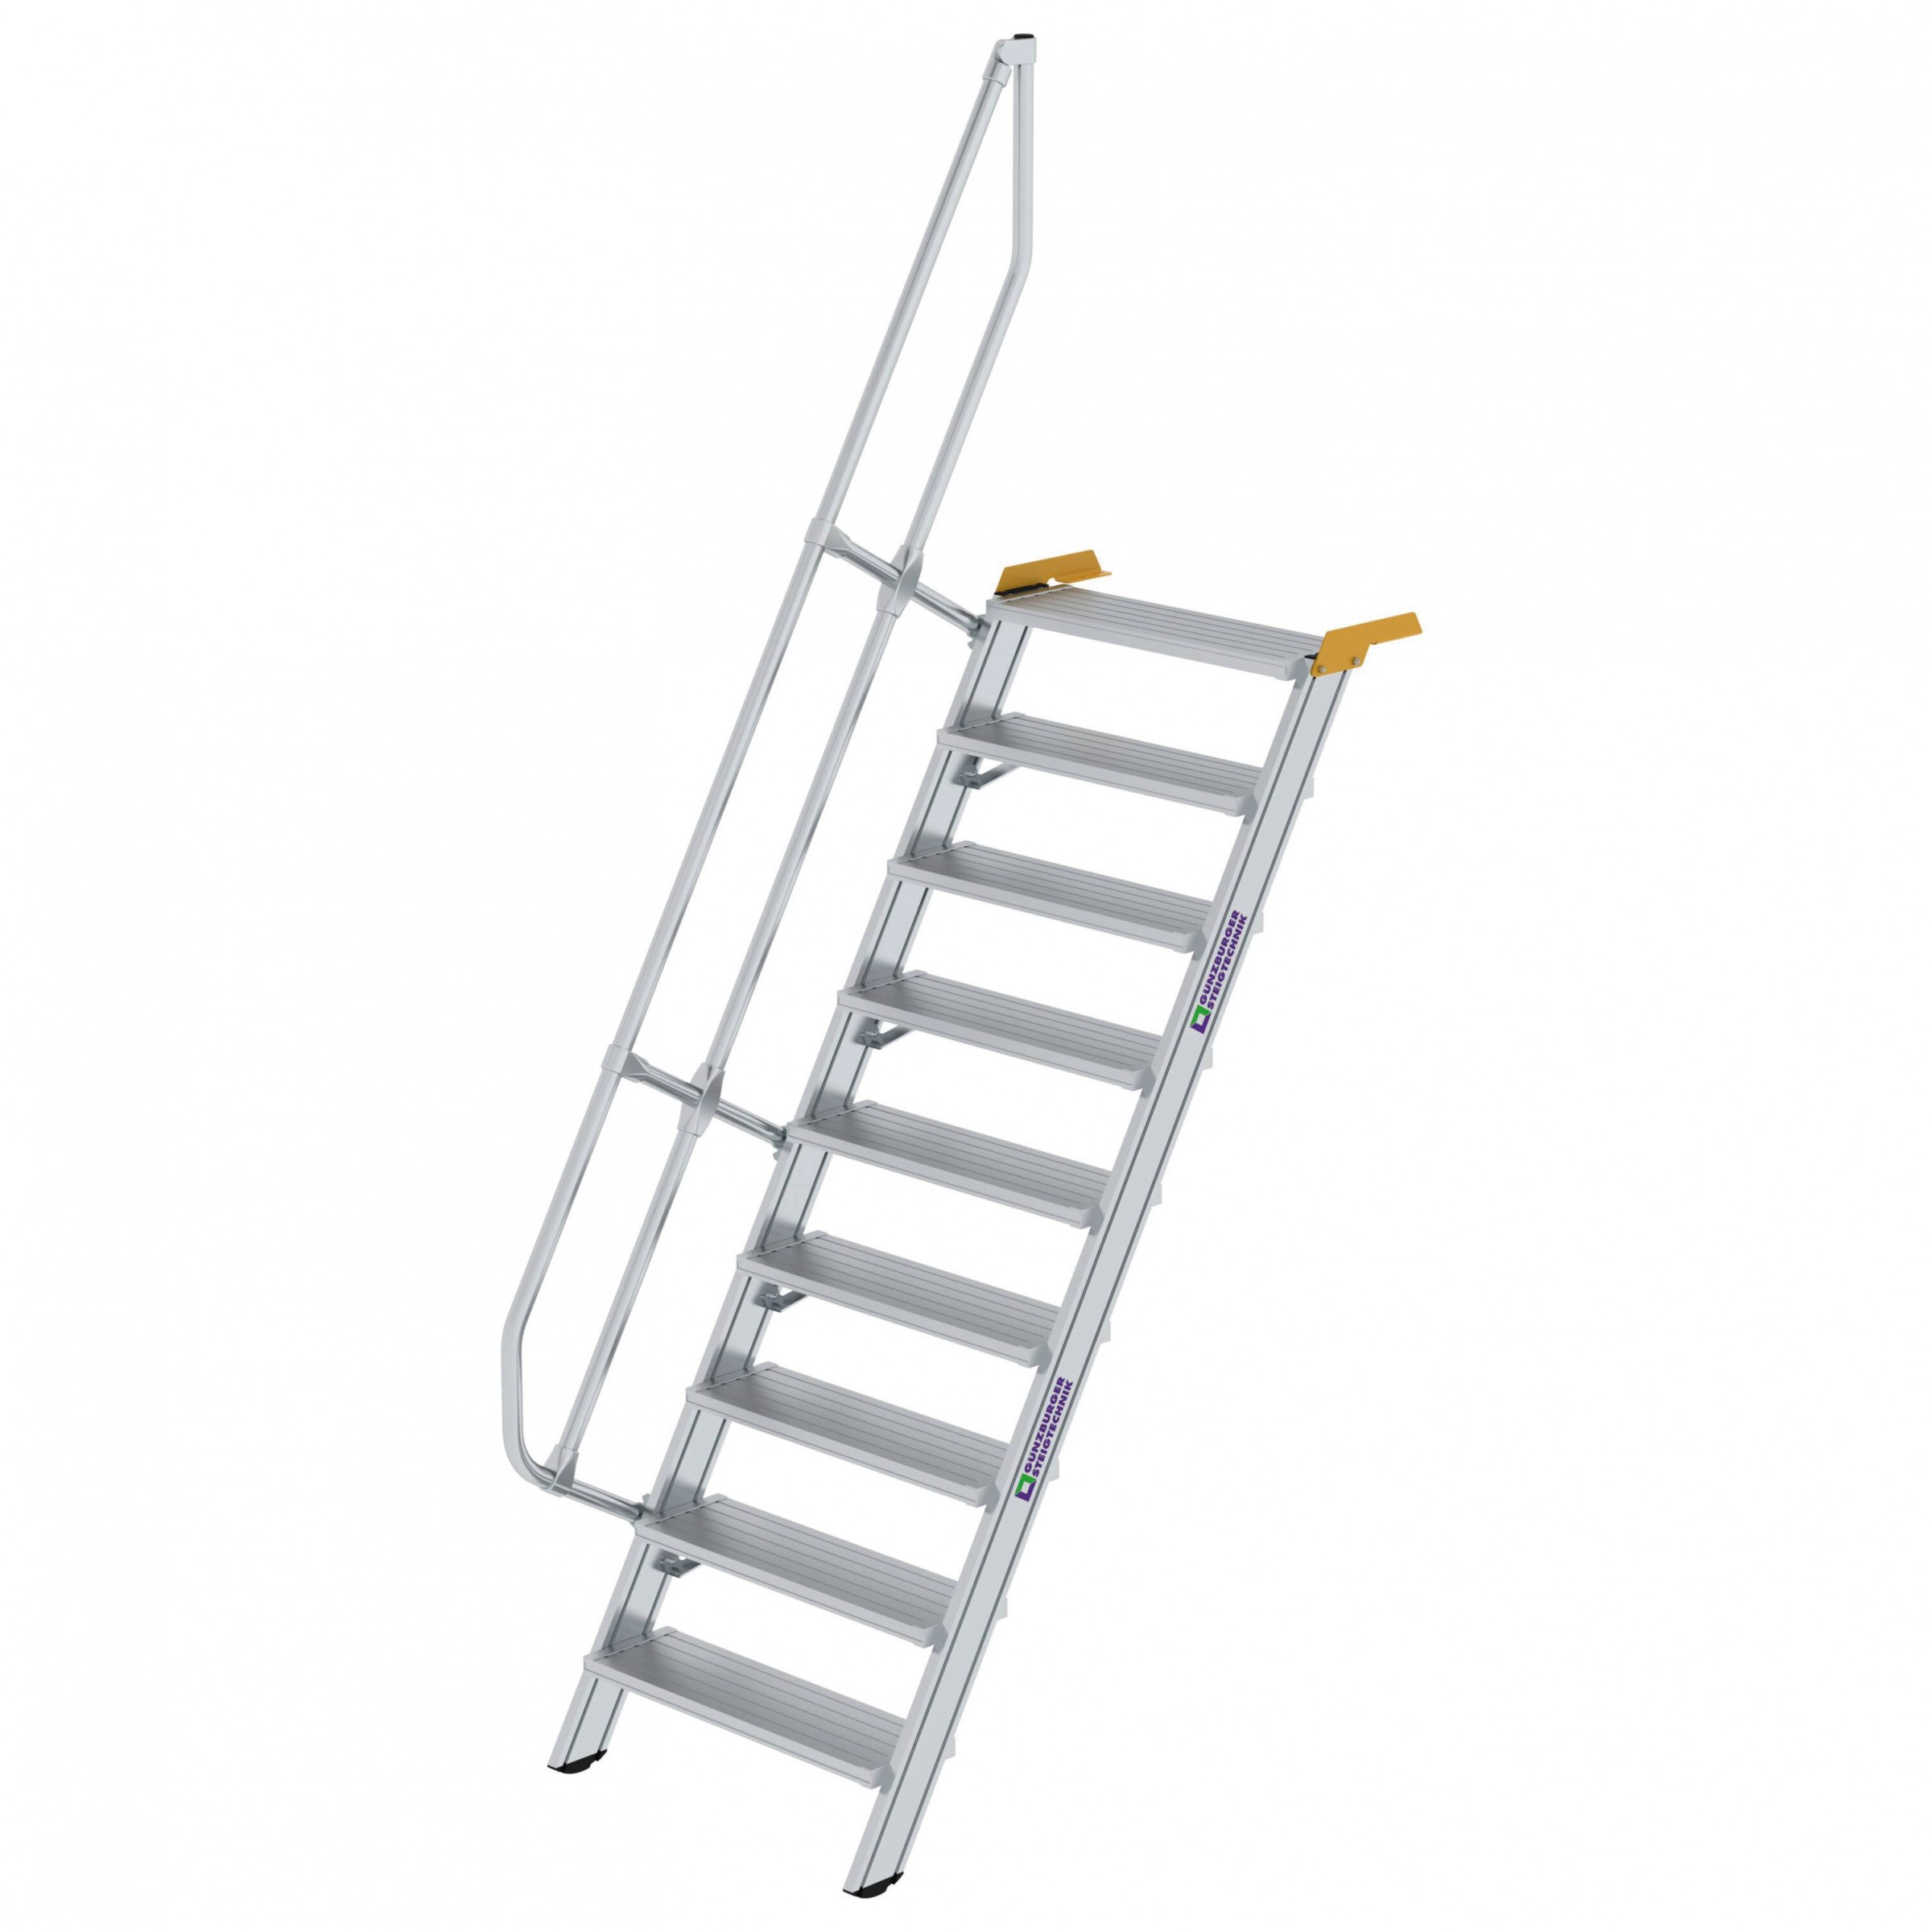 Aluminium-Treppe 60°, Stufenbreite 800 mm, 4 Stufen